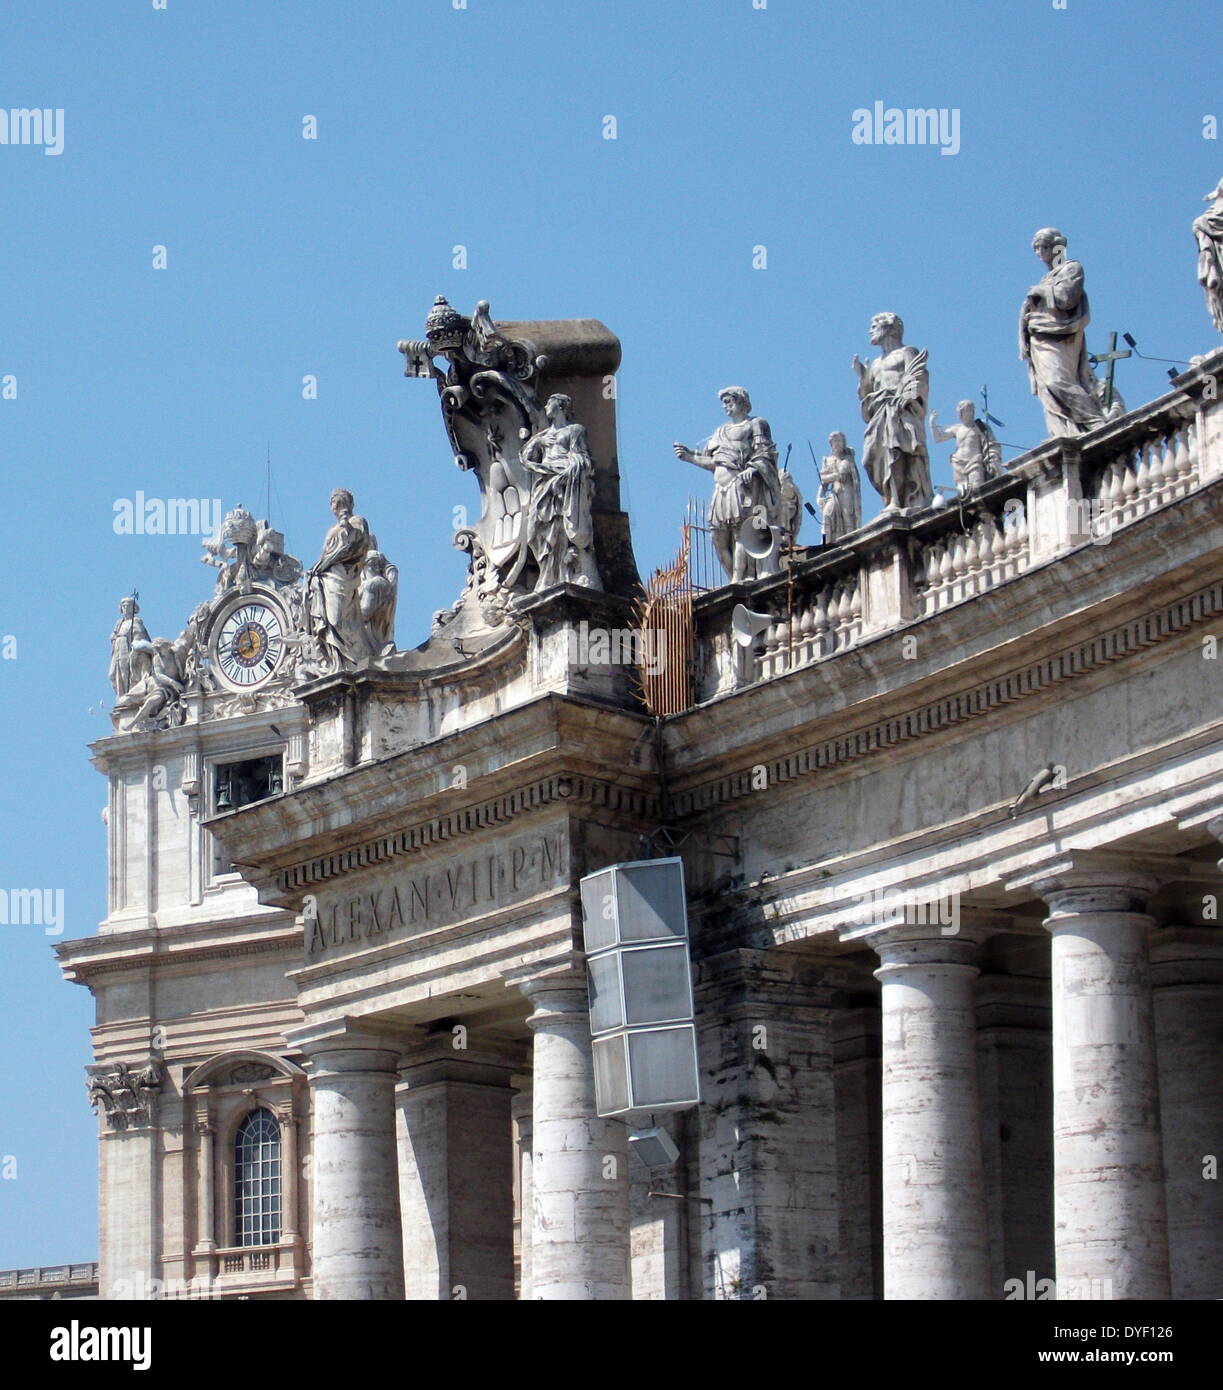 Dettaglio scultoreo dalla Basilica di San Pietro in Vaticano, Italia. La chiesa è la più celebre opera di architettura rinascimentale ed è stato progettato da Donato Bramante, Michelangelo, Carlo Maderno e Gian Lorenzo Bernini. Foto Stock